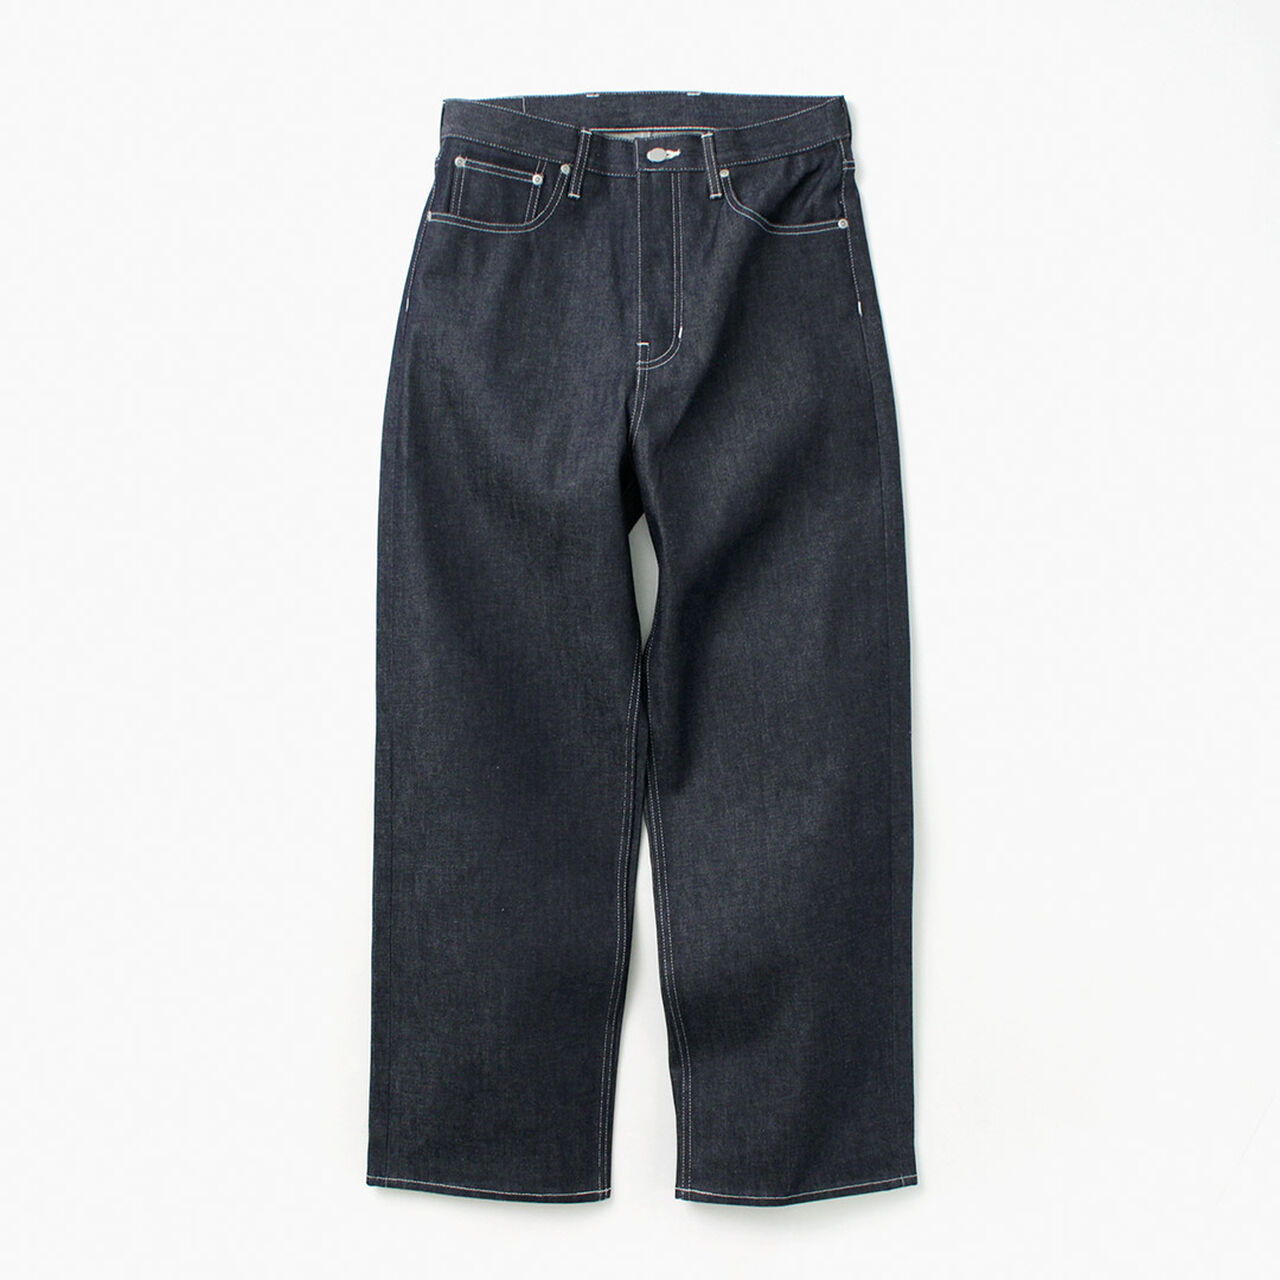 Wide Denim 5 Pocket Pants,, large image number 2